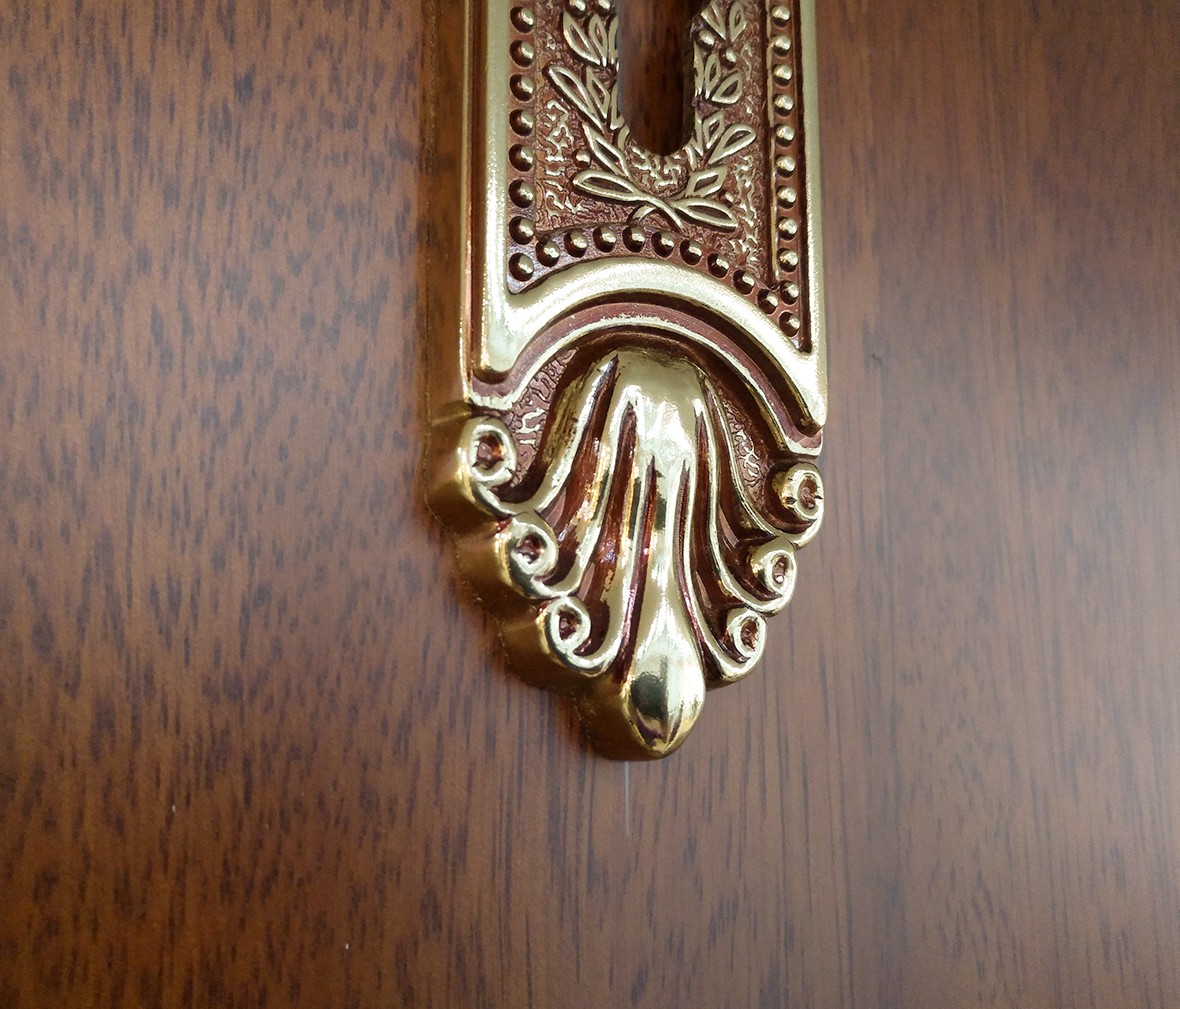 晾霸五金 米开朗802-12欧洲金型号门锁 铜材质 优质门锁 情景细节